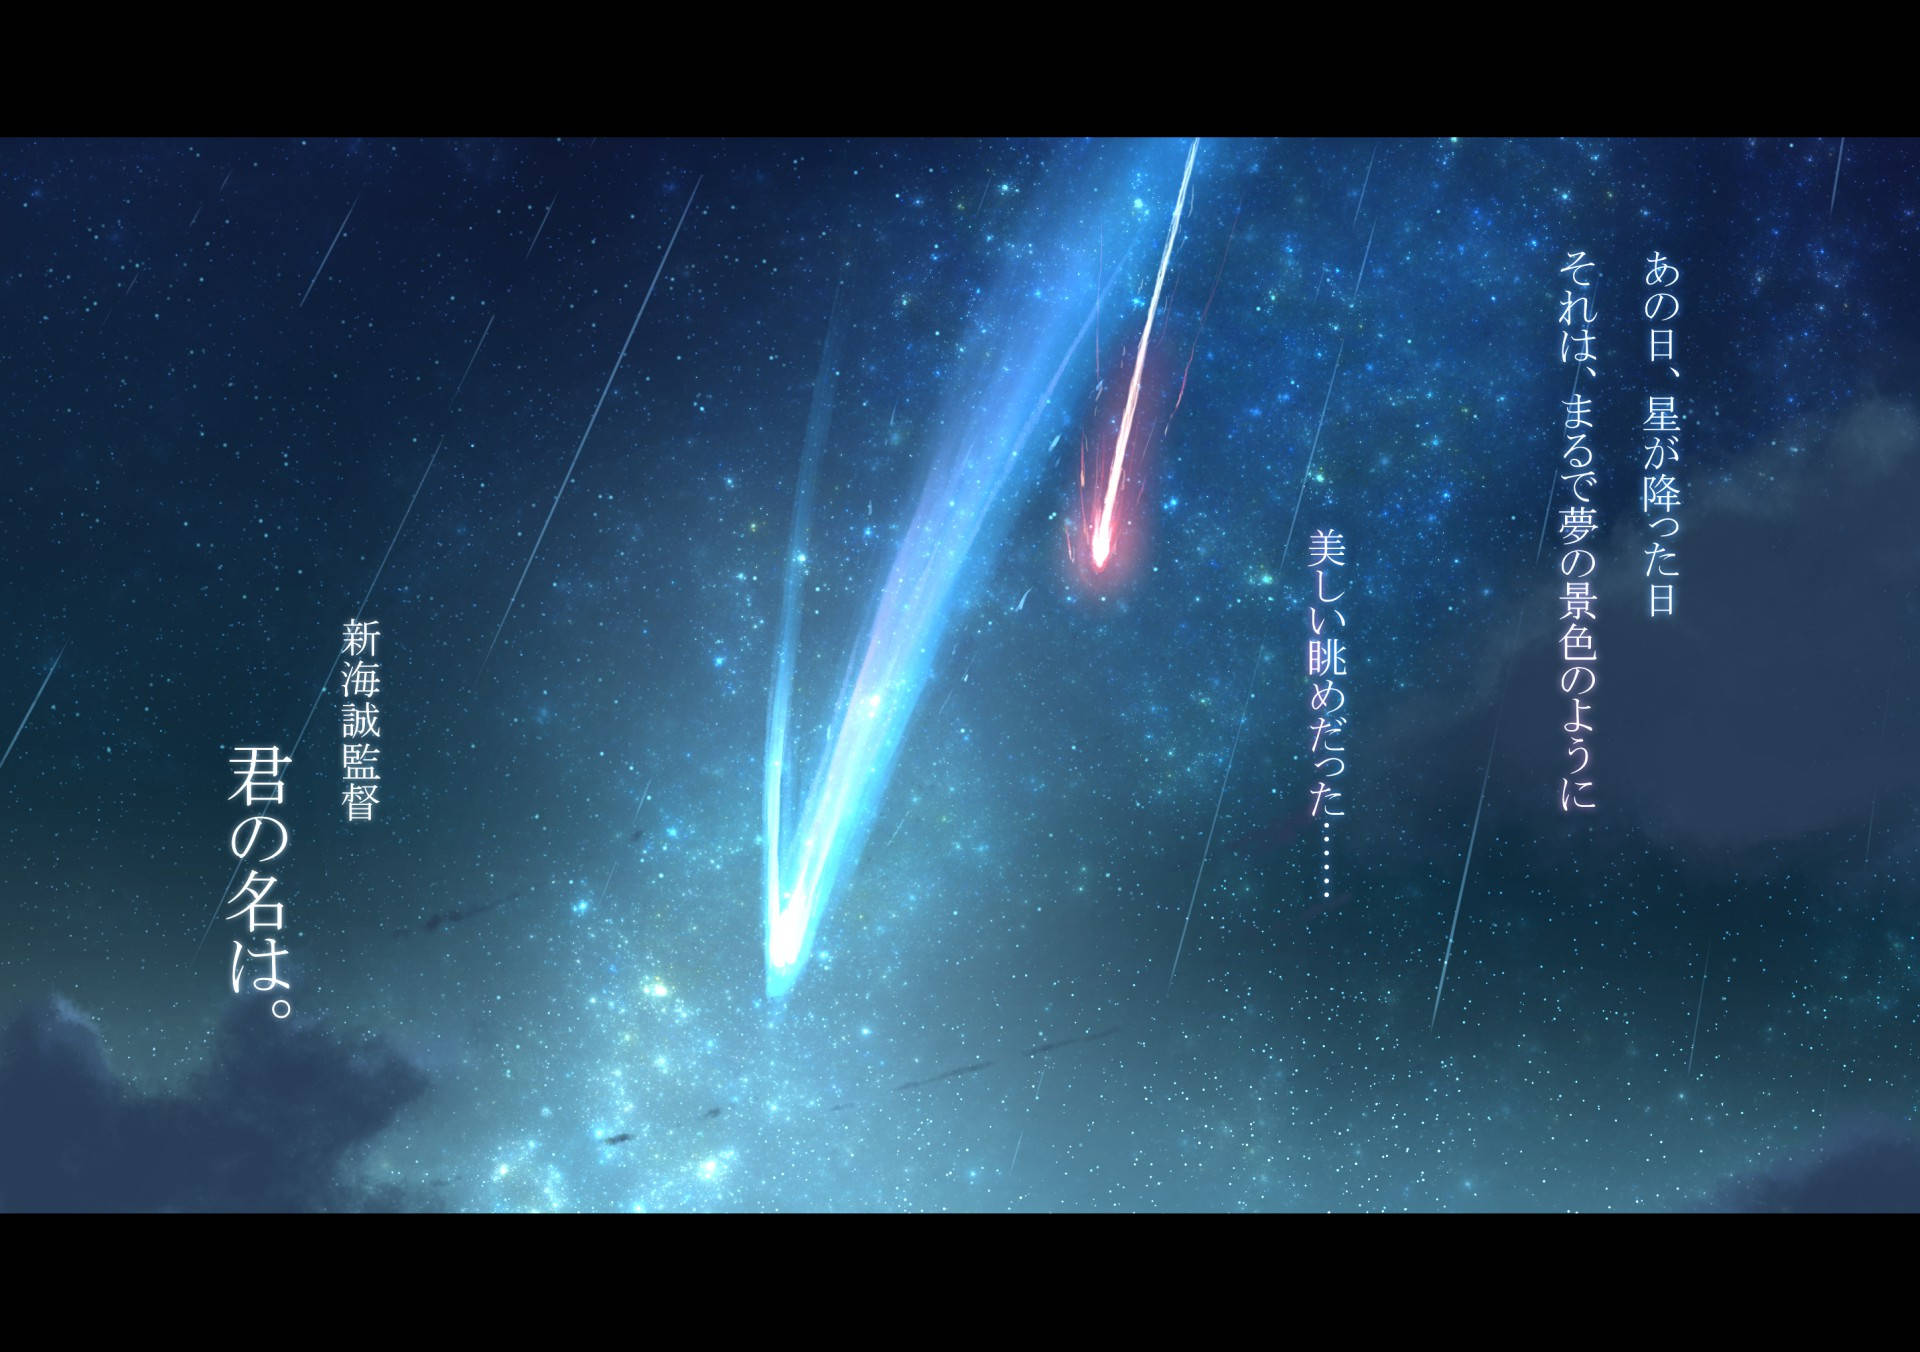 Sky Comet Your Name Anime 2016